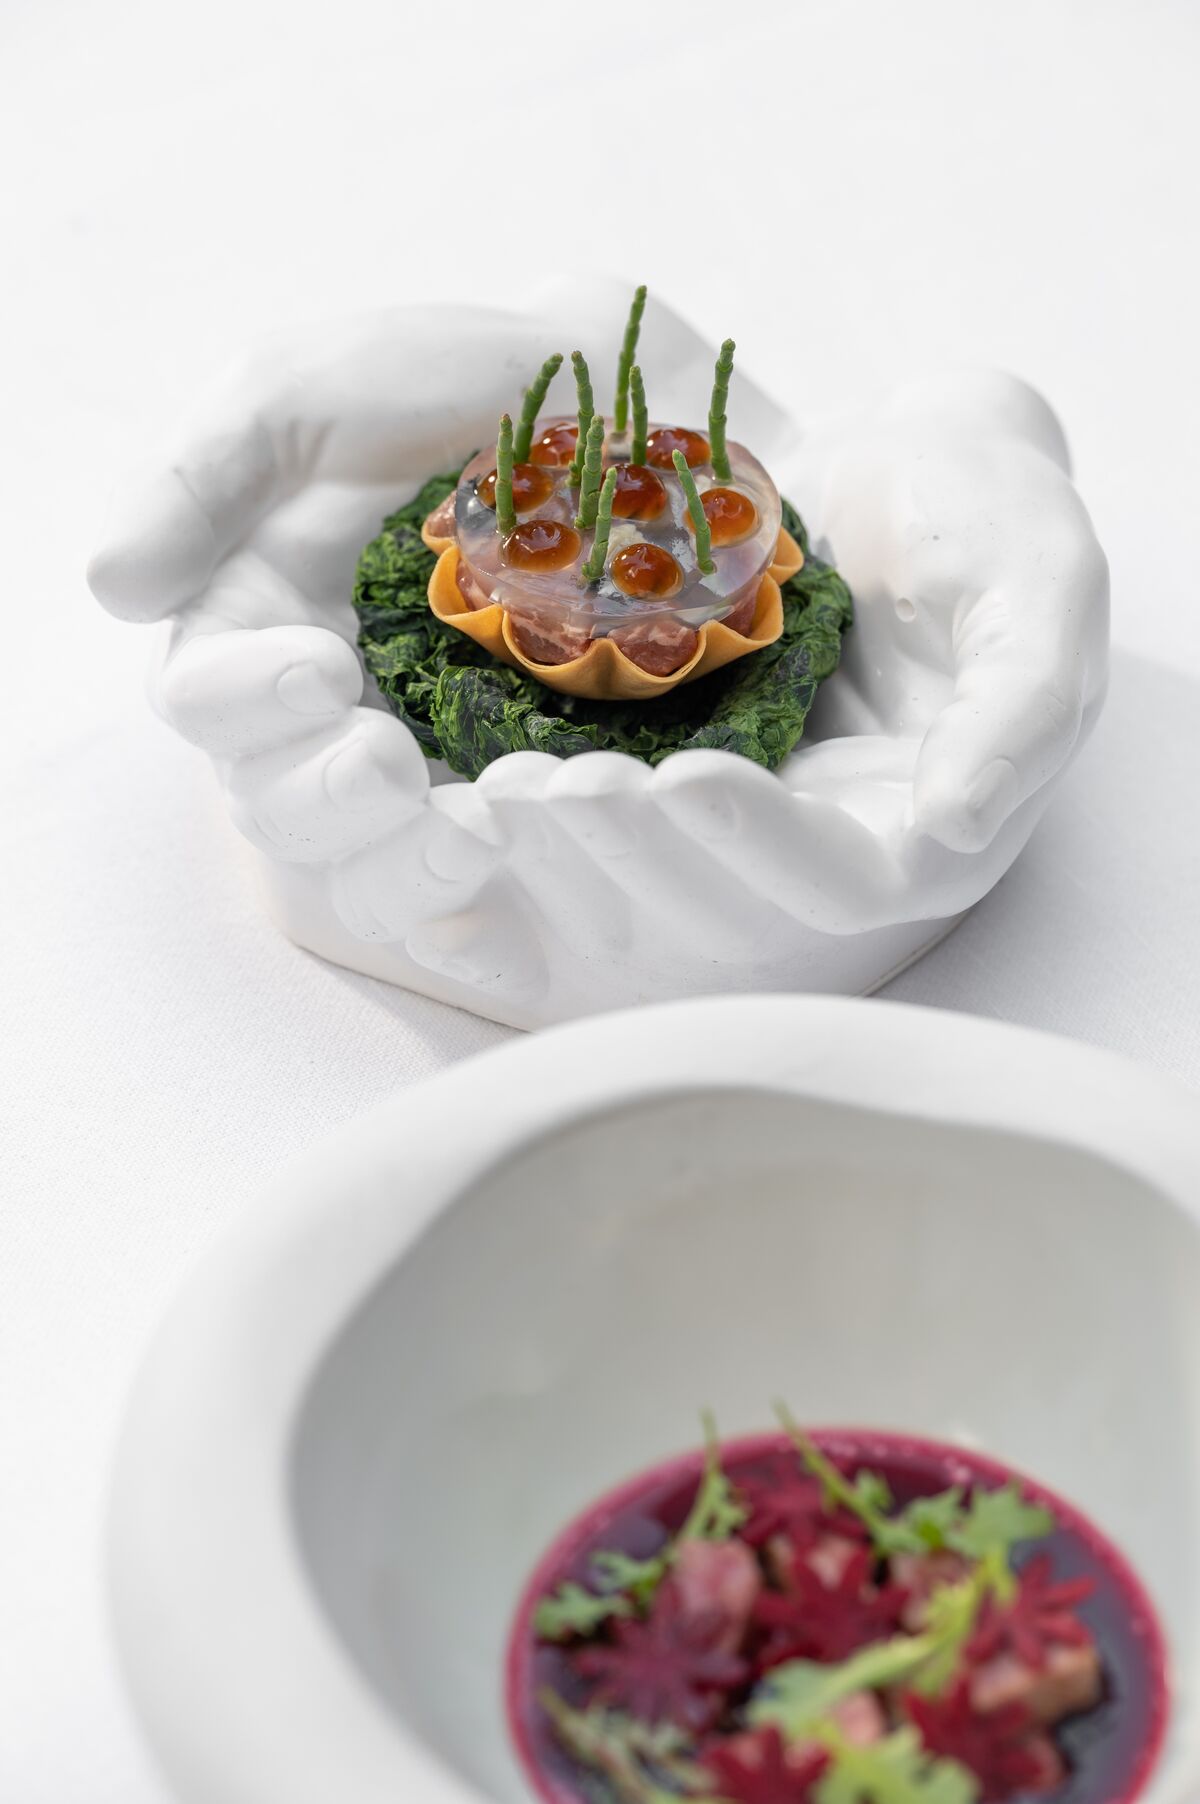 1704080006 930 Ρεβεγιόν Πρωτοχρονιάς στα βραβευμένα με αστέρια Michelin εστιατόρια της Αθήνας